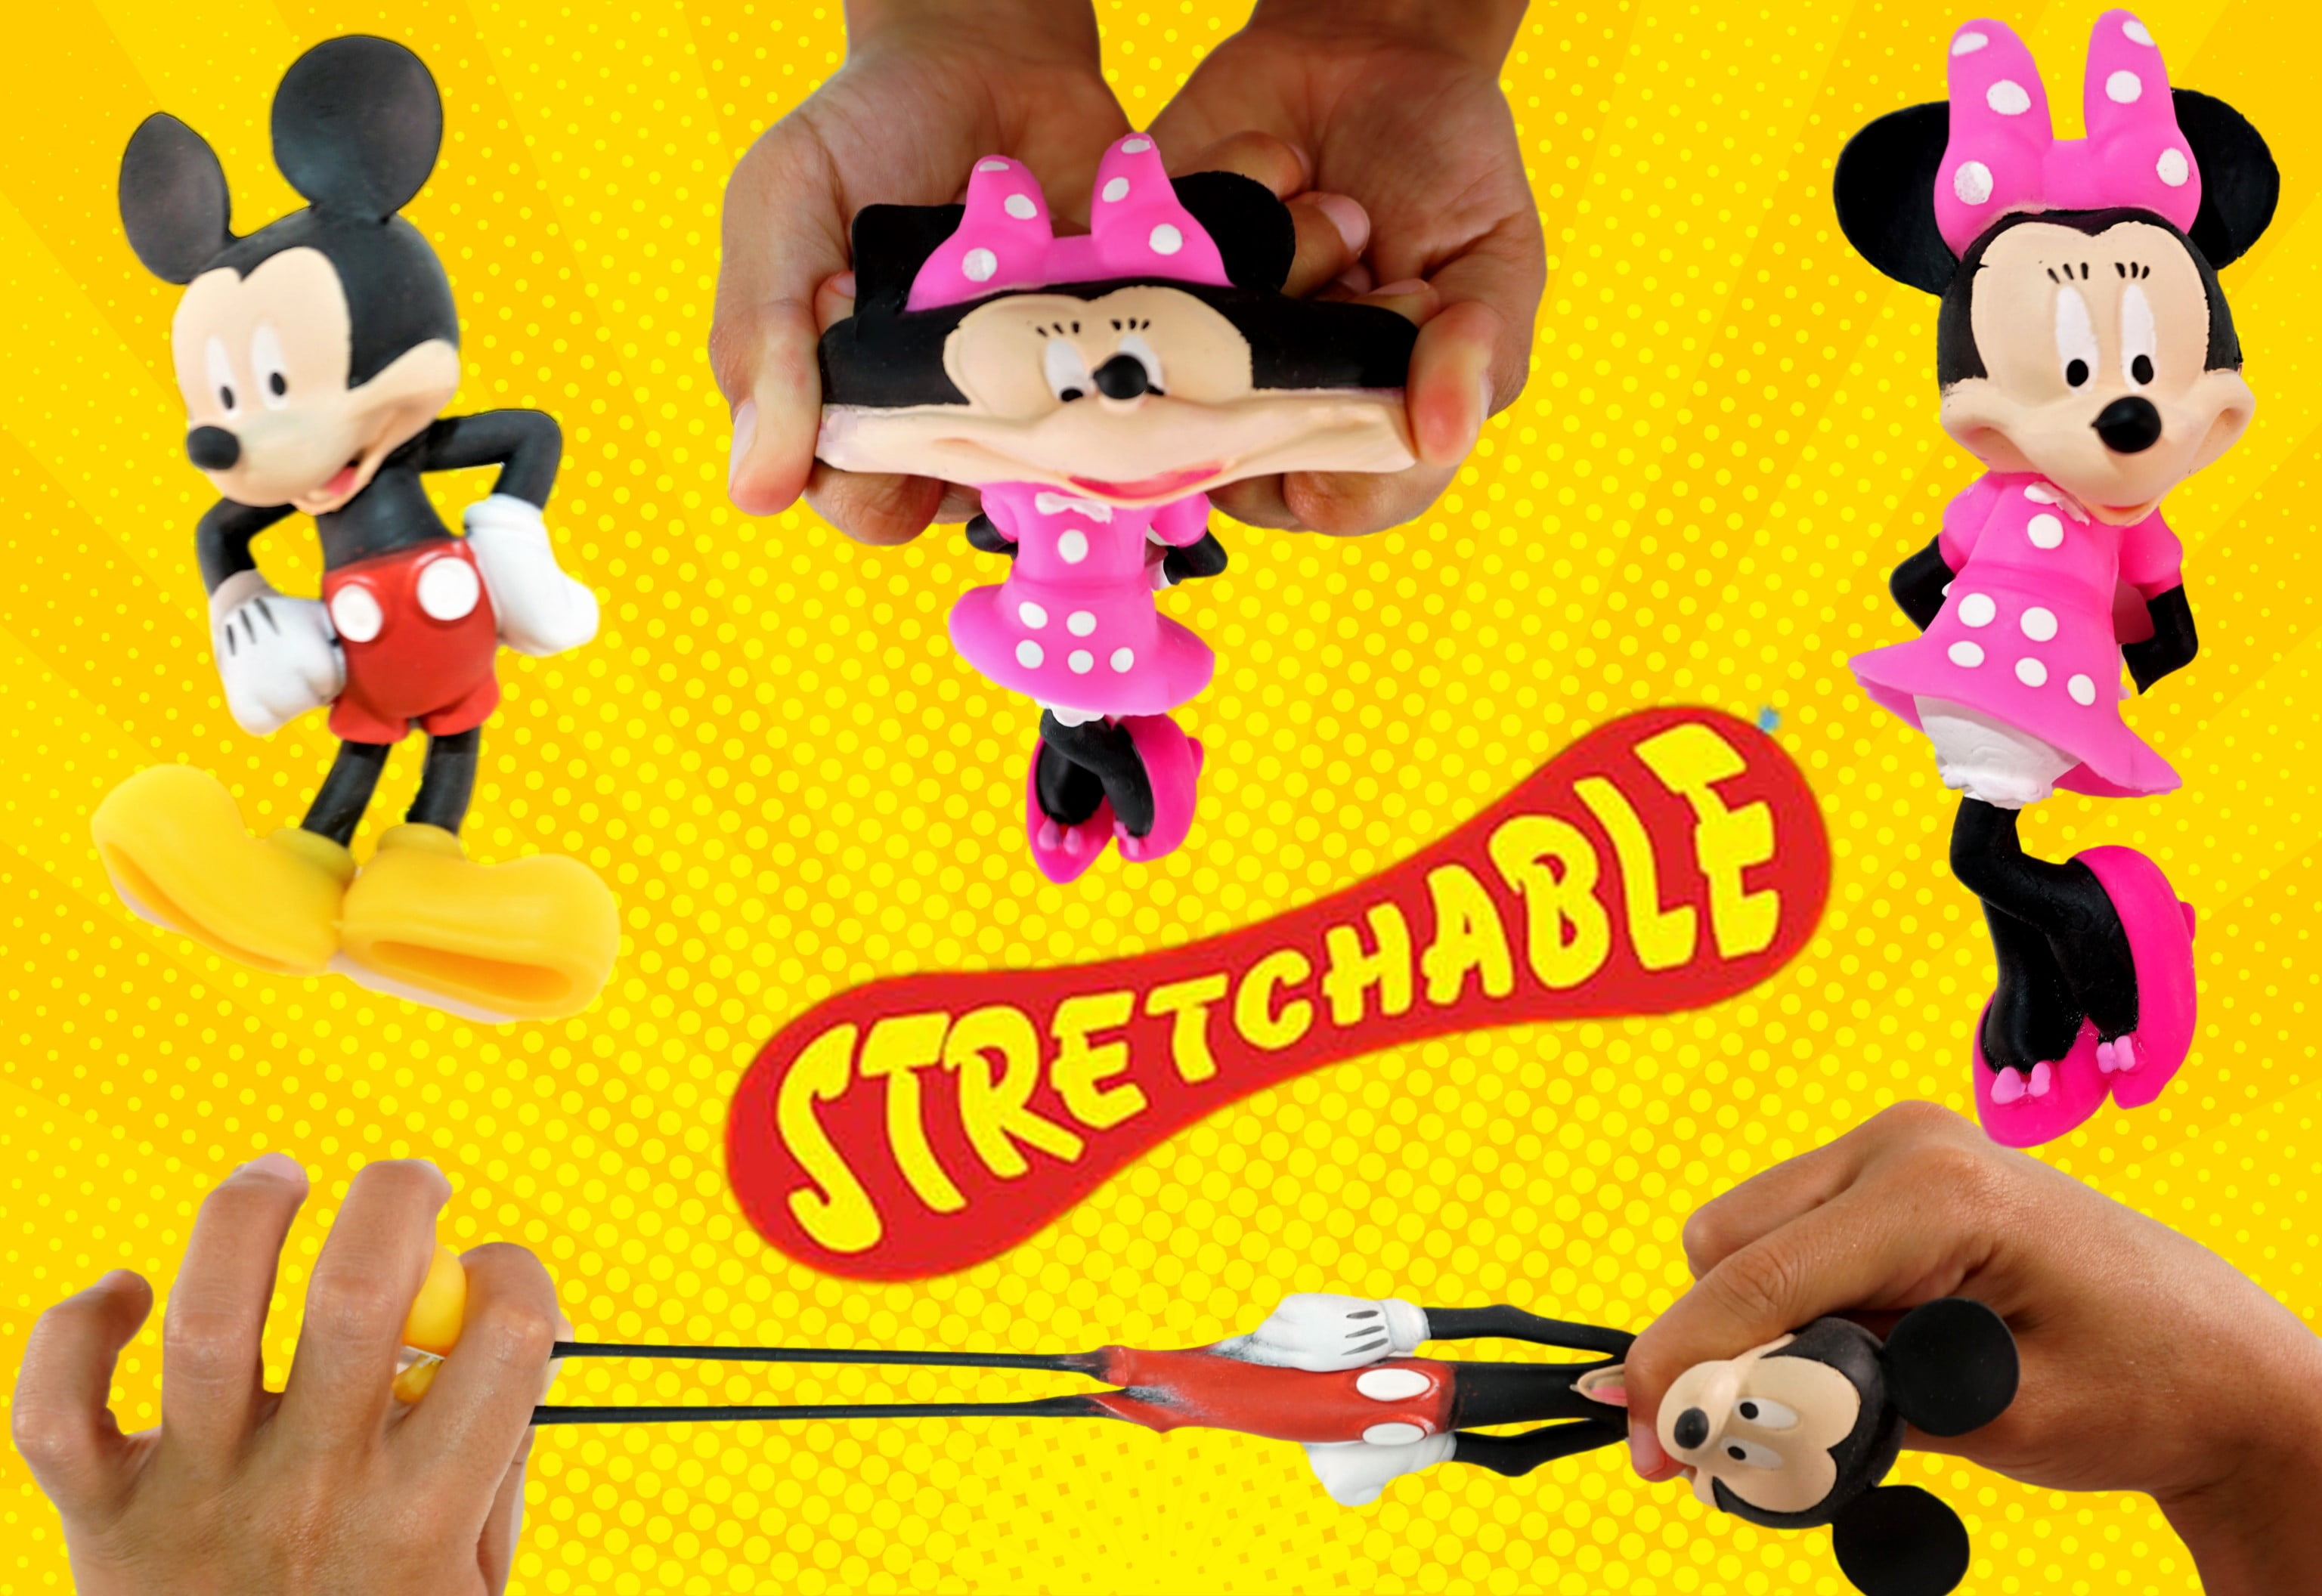 JA-RU Disney - Juguetes elásticos de Mickey y Minnie Figuras Squish & Pull  Toys (1 figura de Mickey), casa club Disney juguete calmante para la